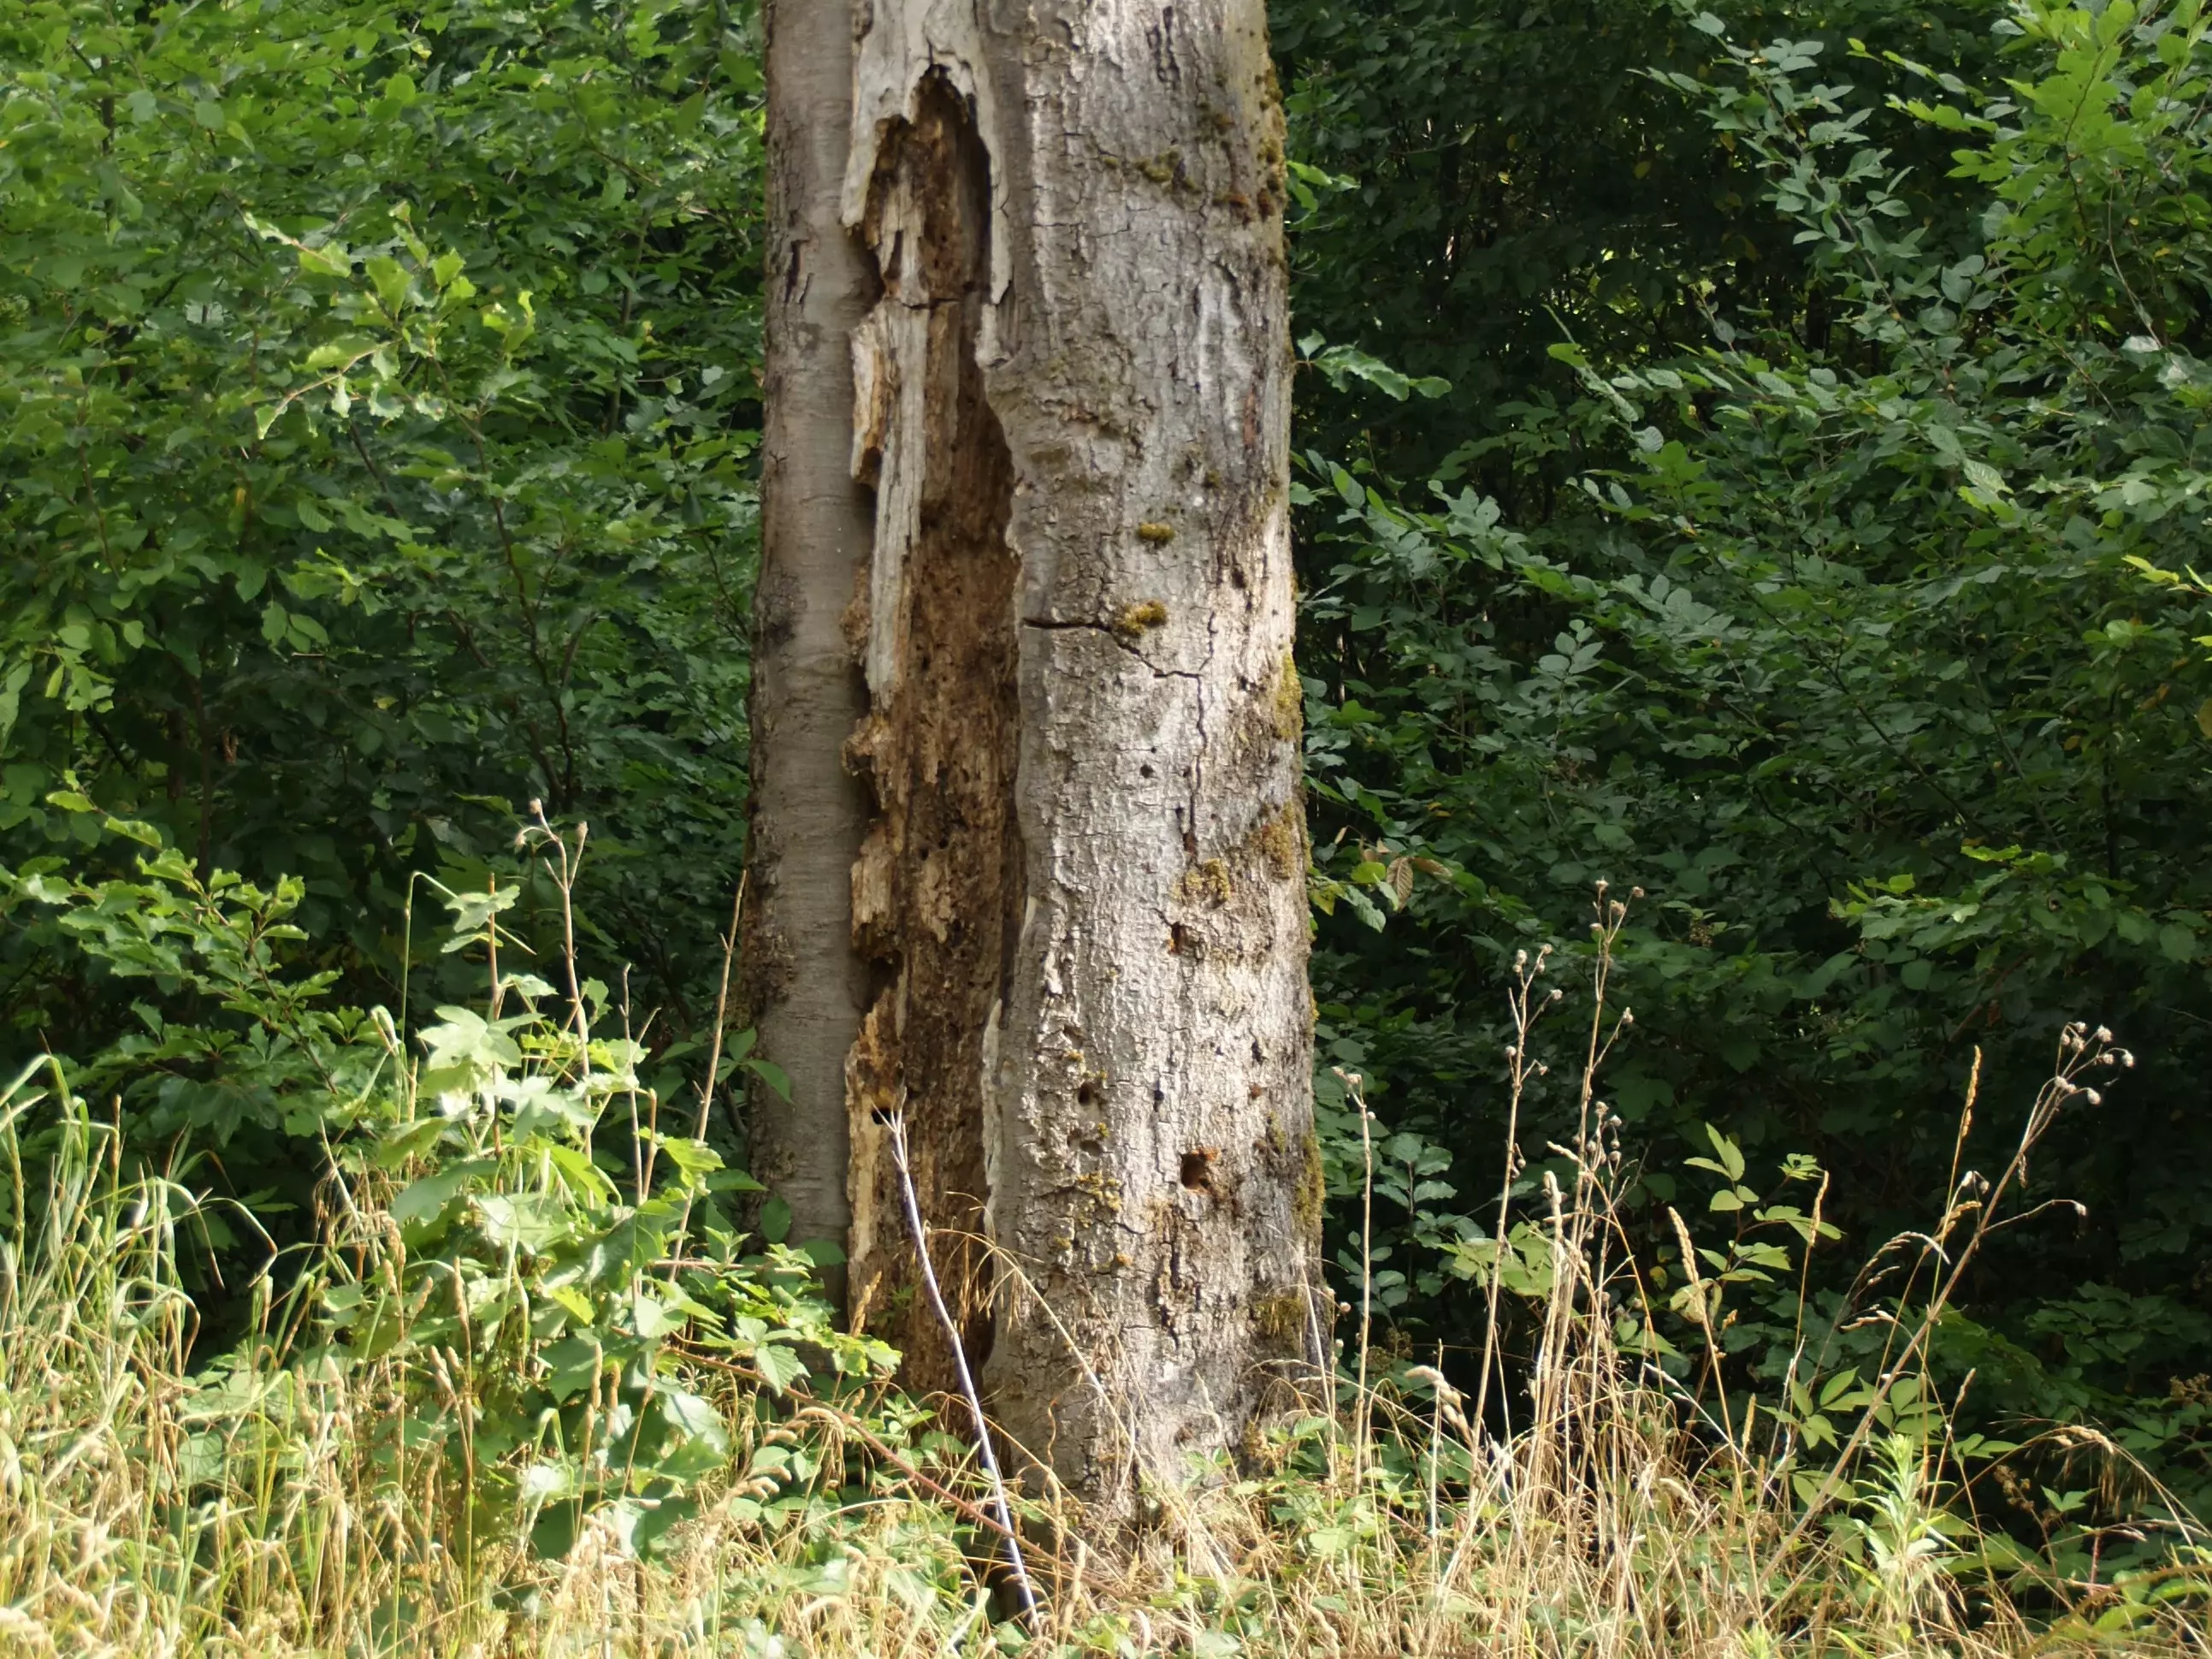 Habitatbaum